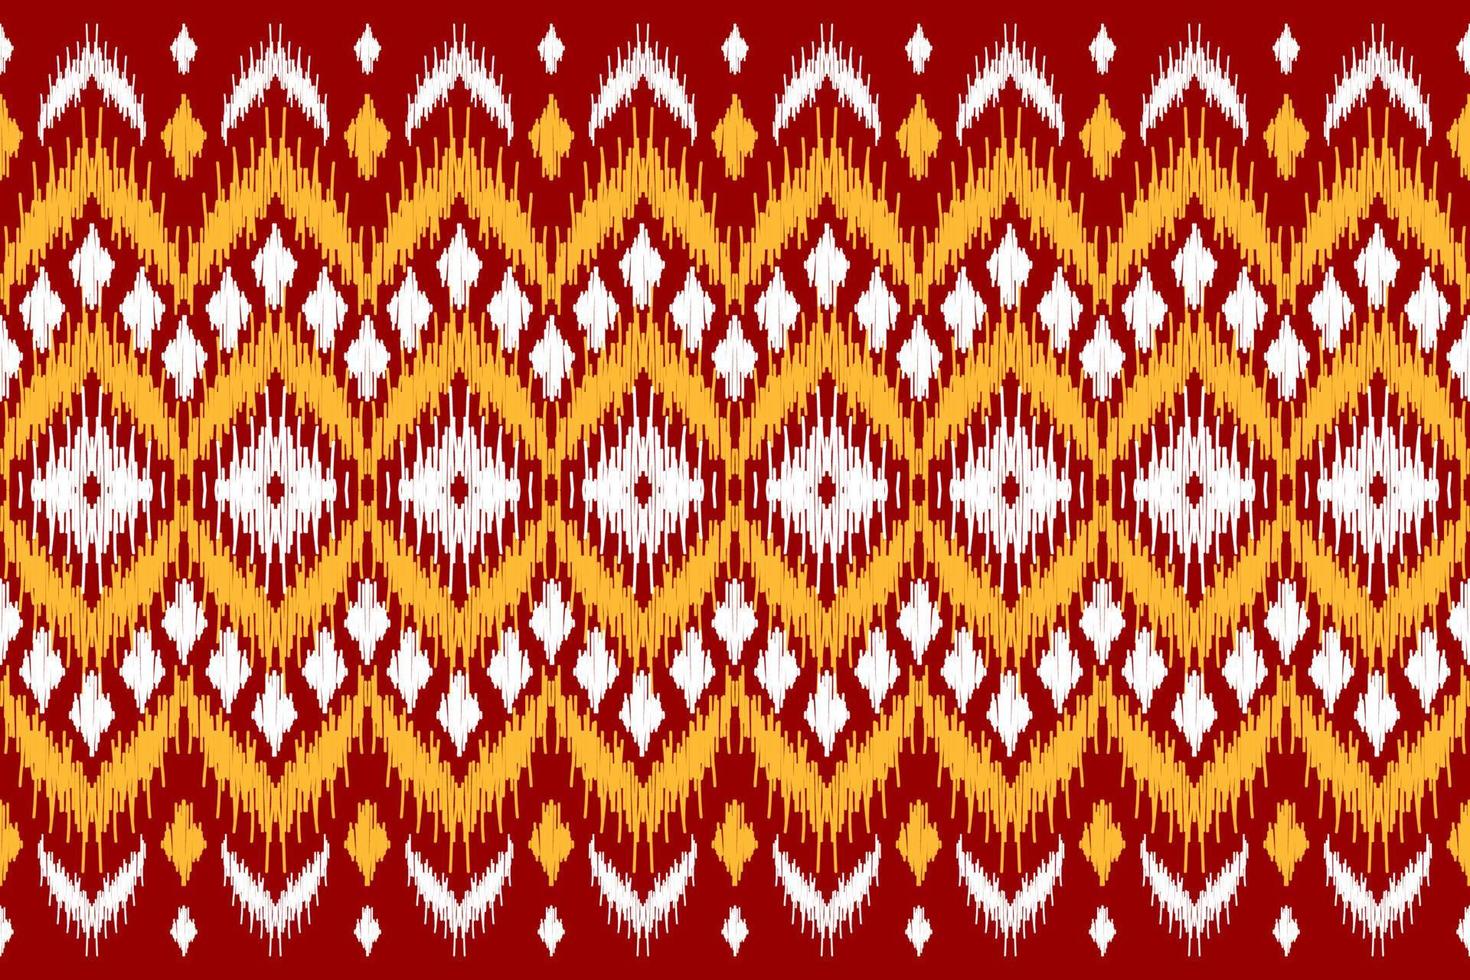 tapete ikat arte padrão vermelho. padrão sem emenda geométrico étnico ikat em tribal. estilo americano e mexicano. vetor